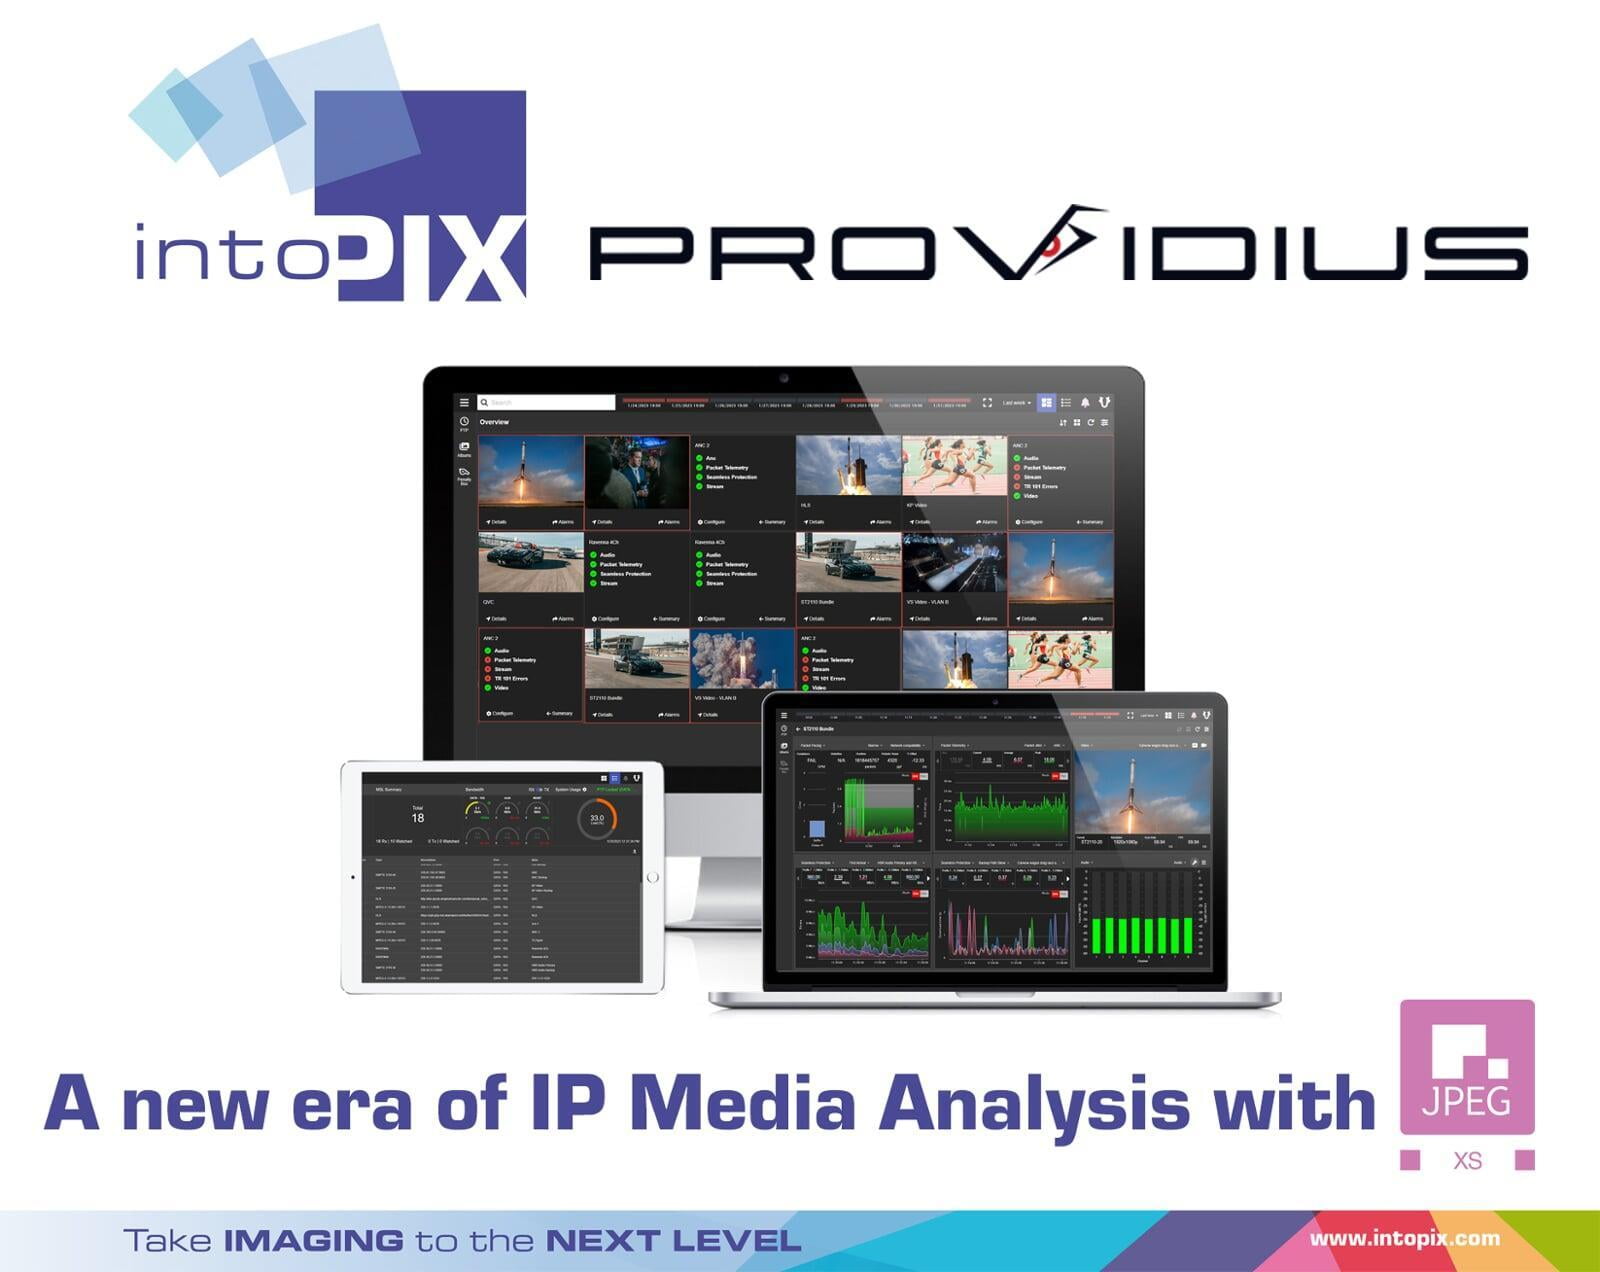 Providius增加了改变游戏规则的intoPIX JPEG  XS编解码器，预示着IP 媒体分析的新时代。